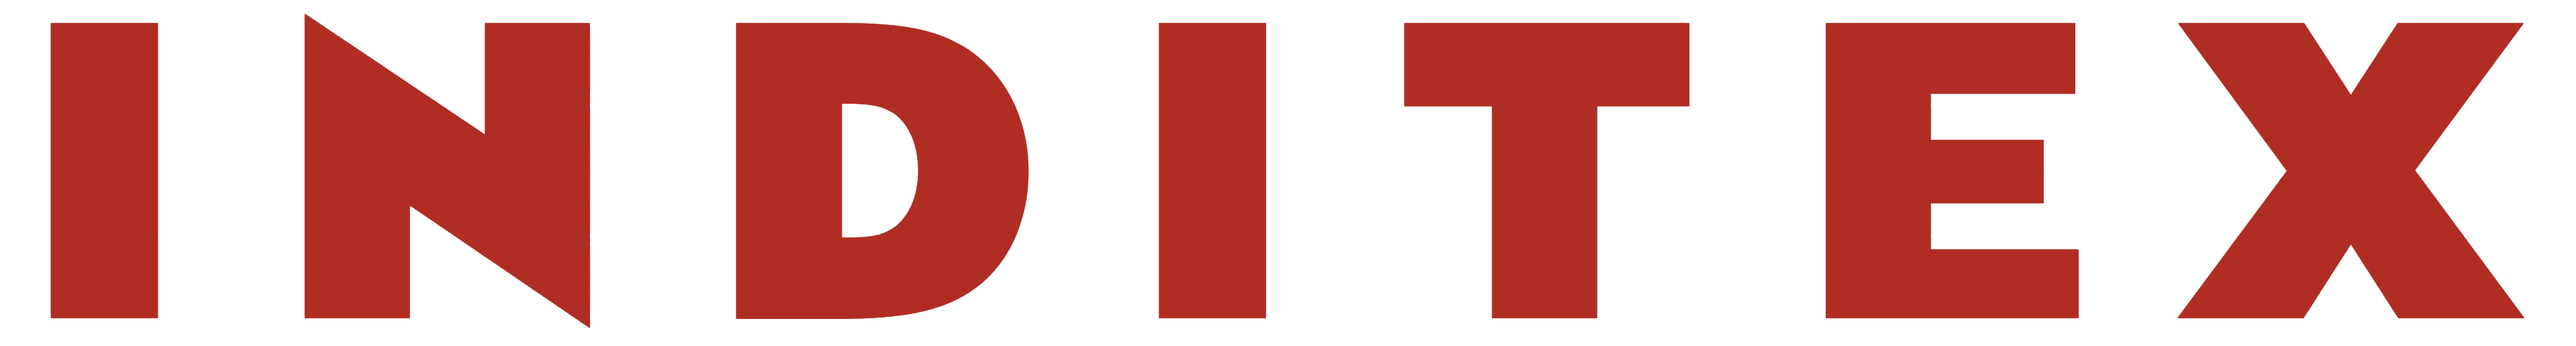 Inditex Logo PNG-PlusPNG.com-